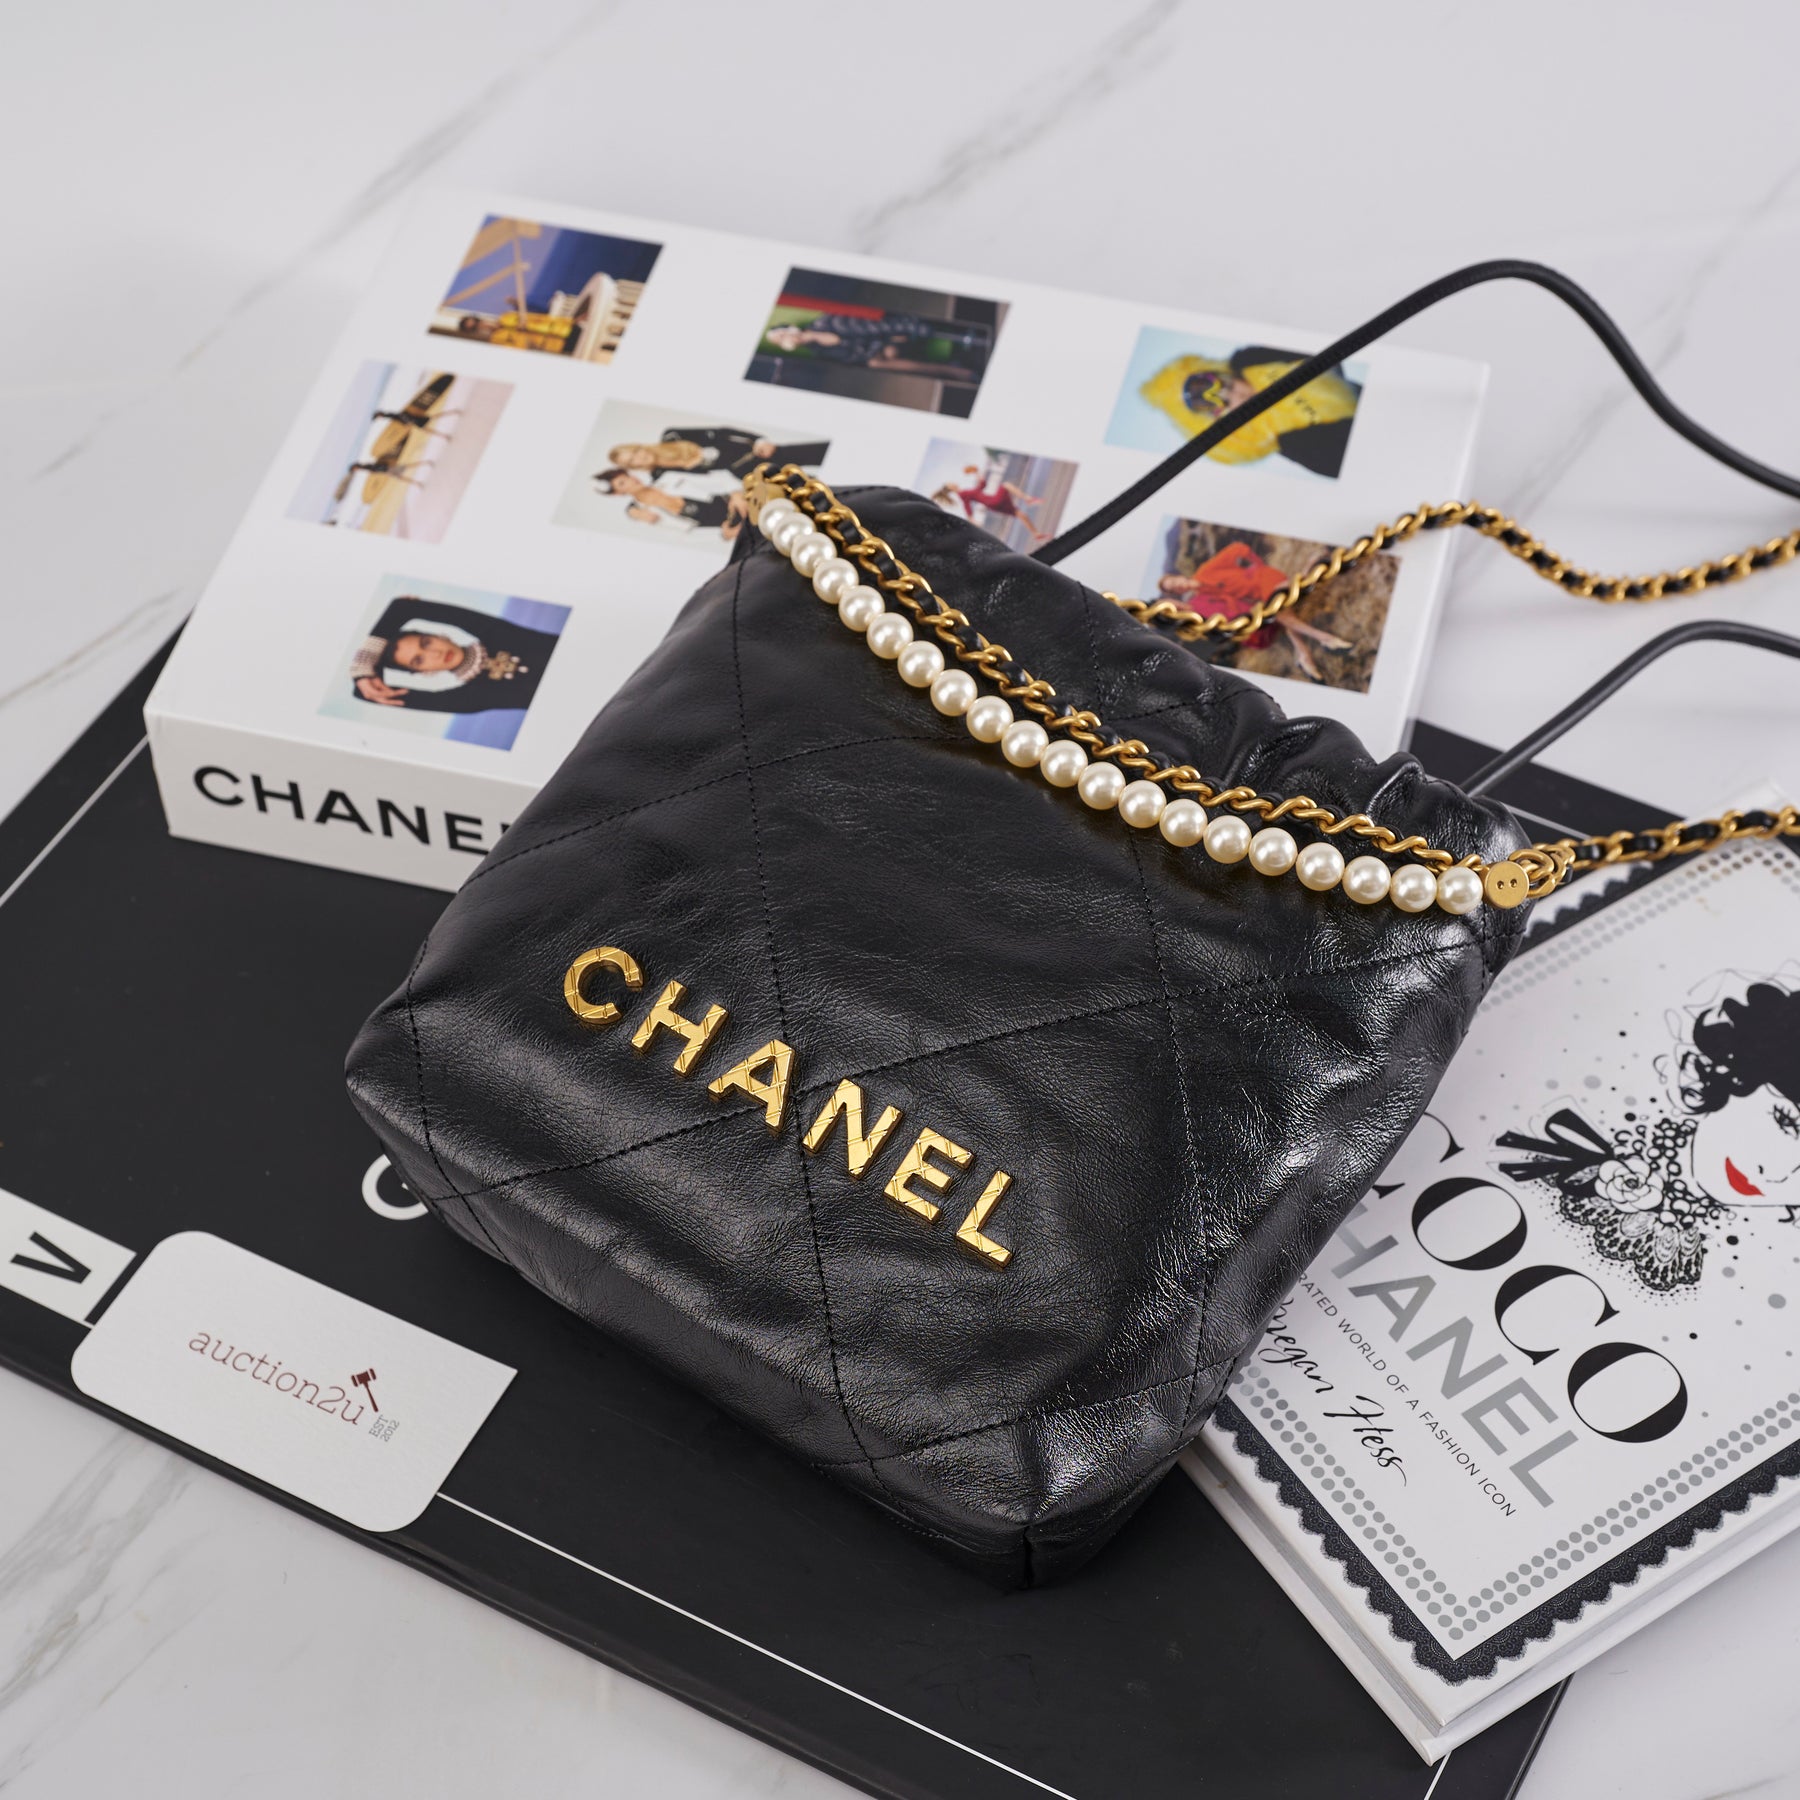 Chanel Women's Crossbody Bags